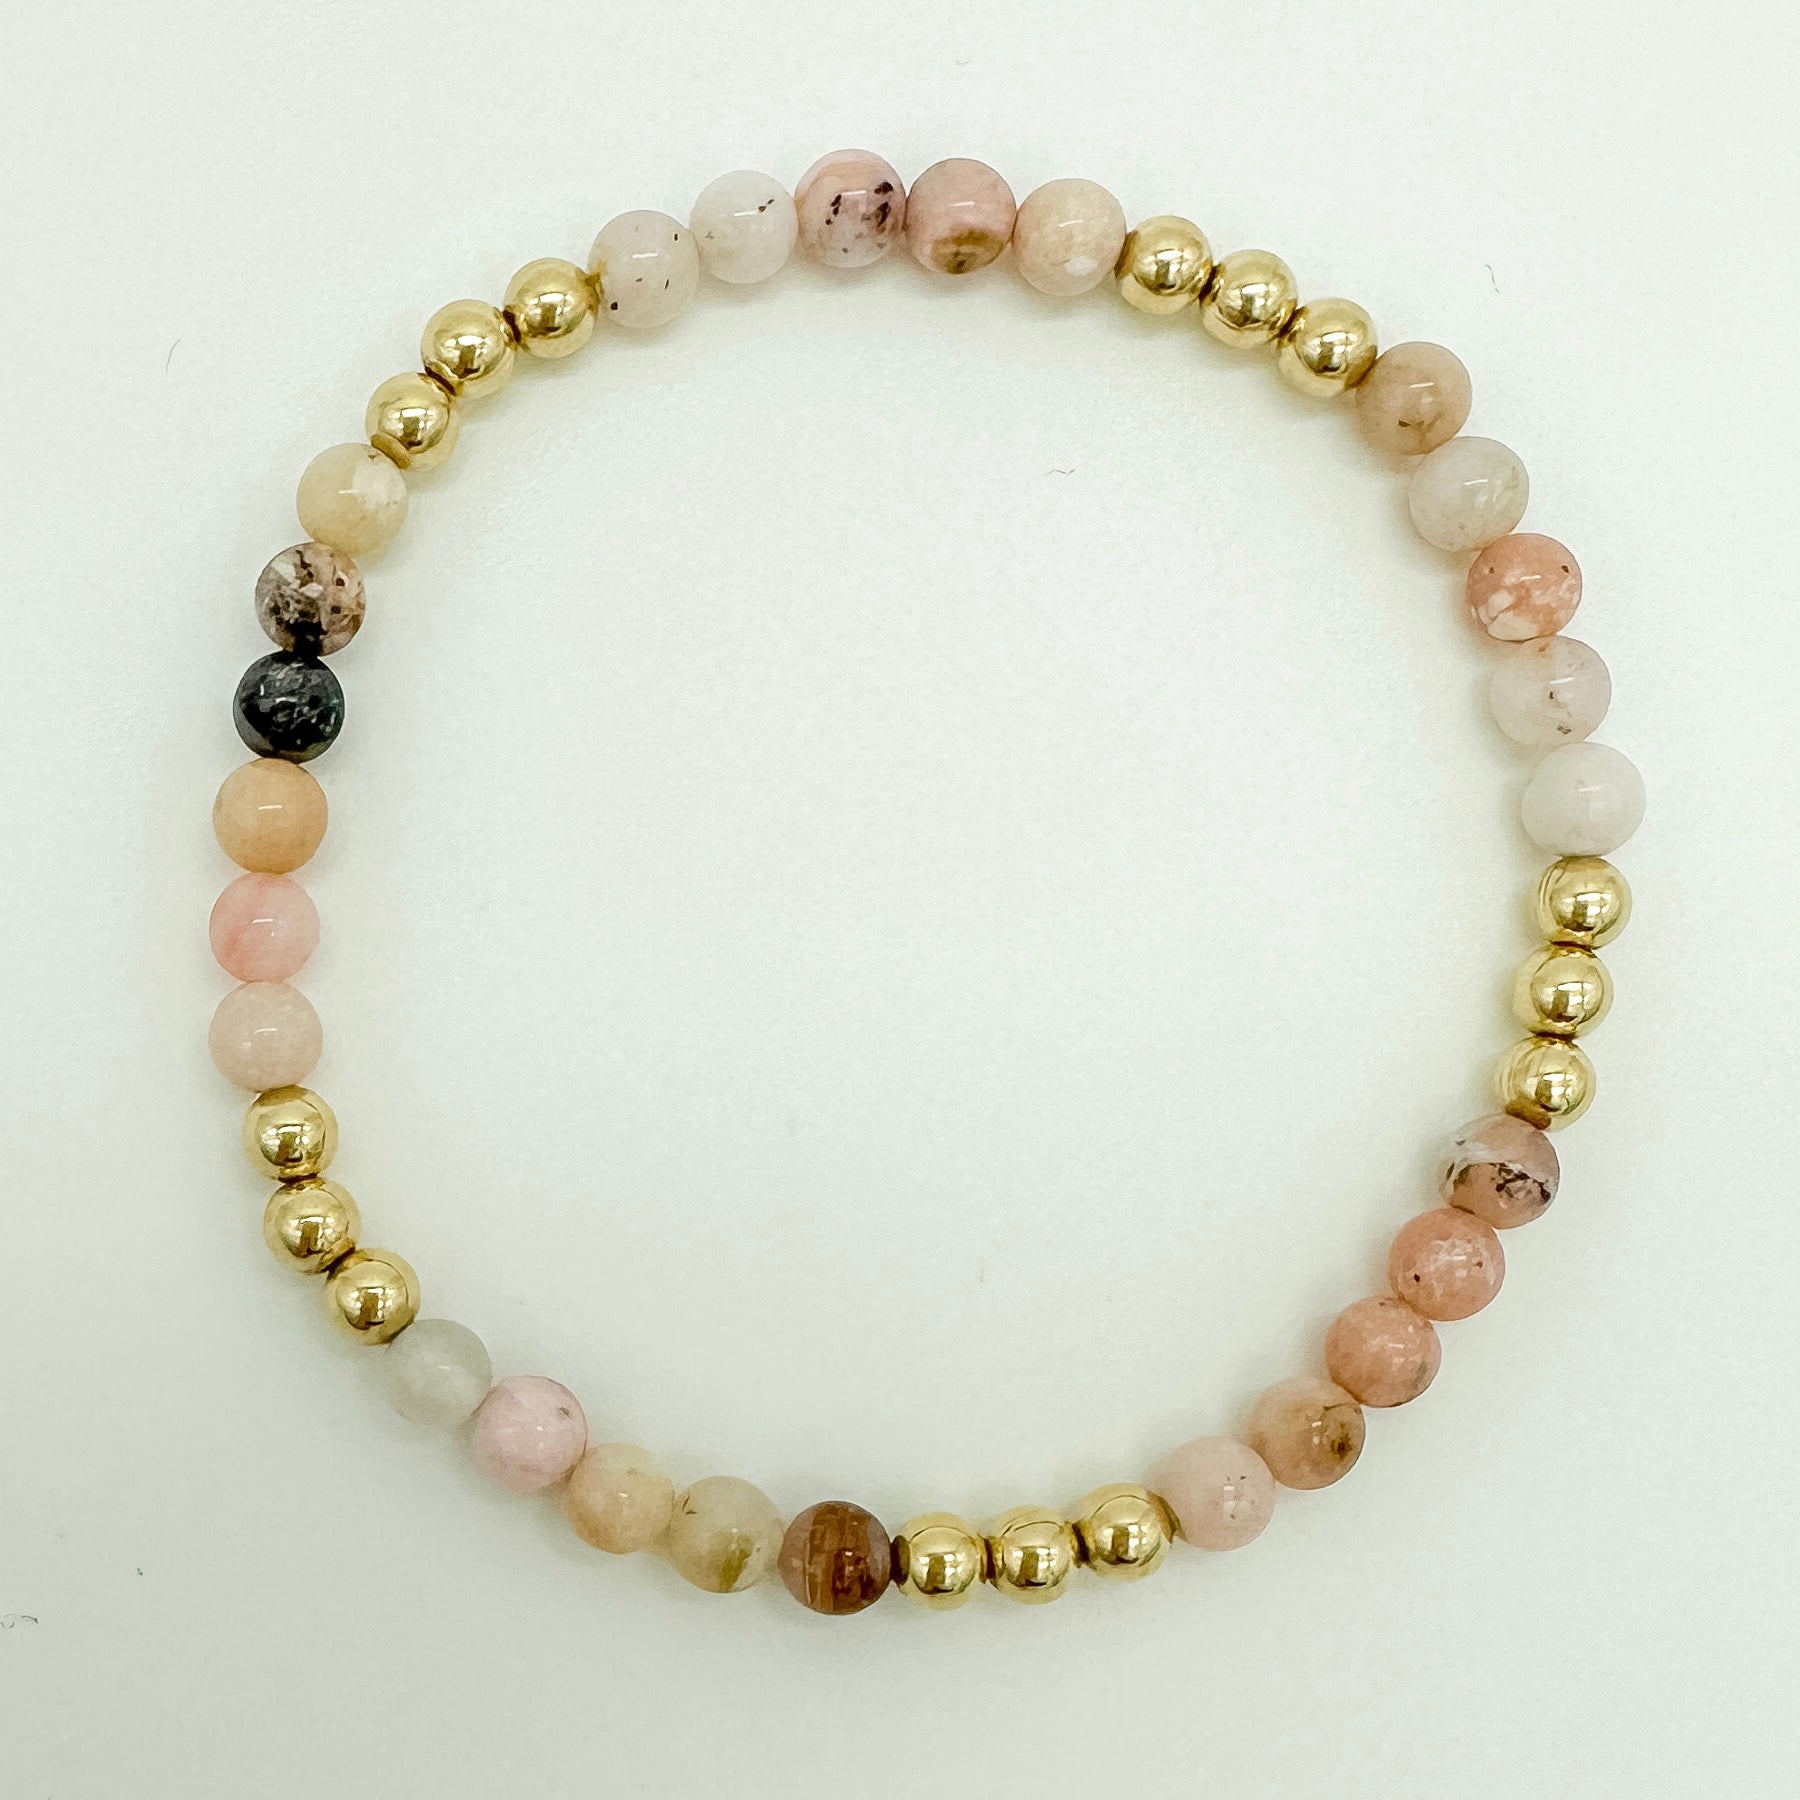 gemstone beaded bracelet / wholesale jewelry / hand-beaded bracelet / permanent jewelry supplier / pink opal beaded bracelet